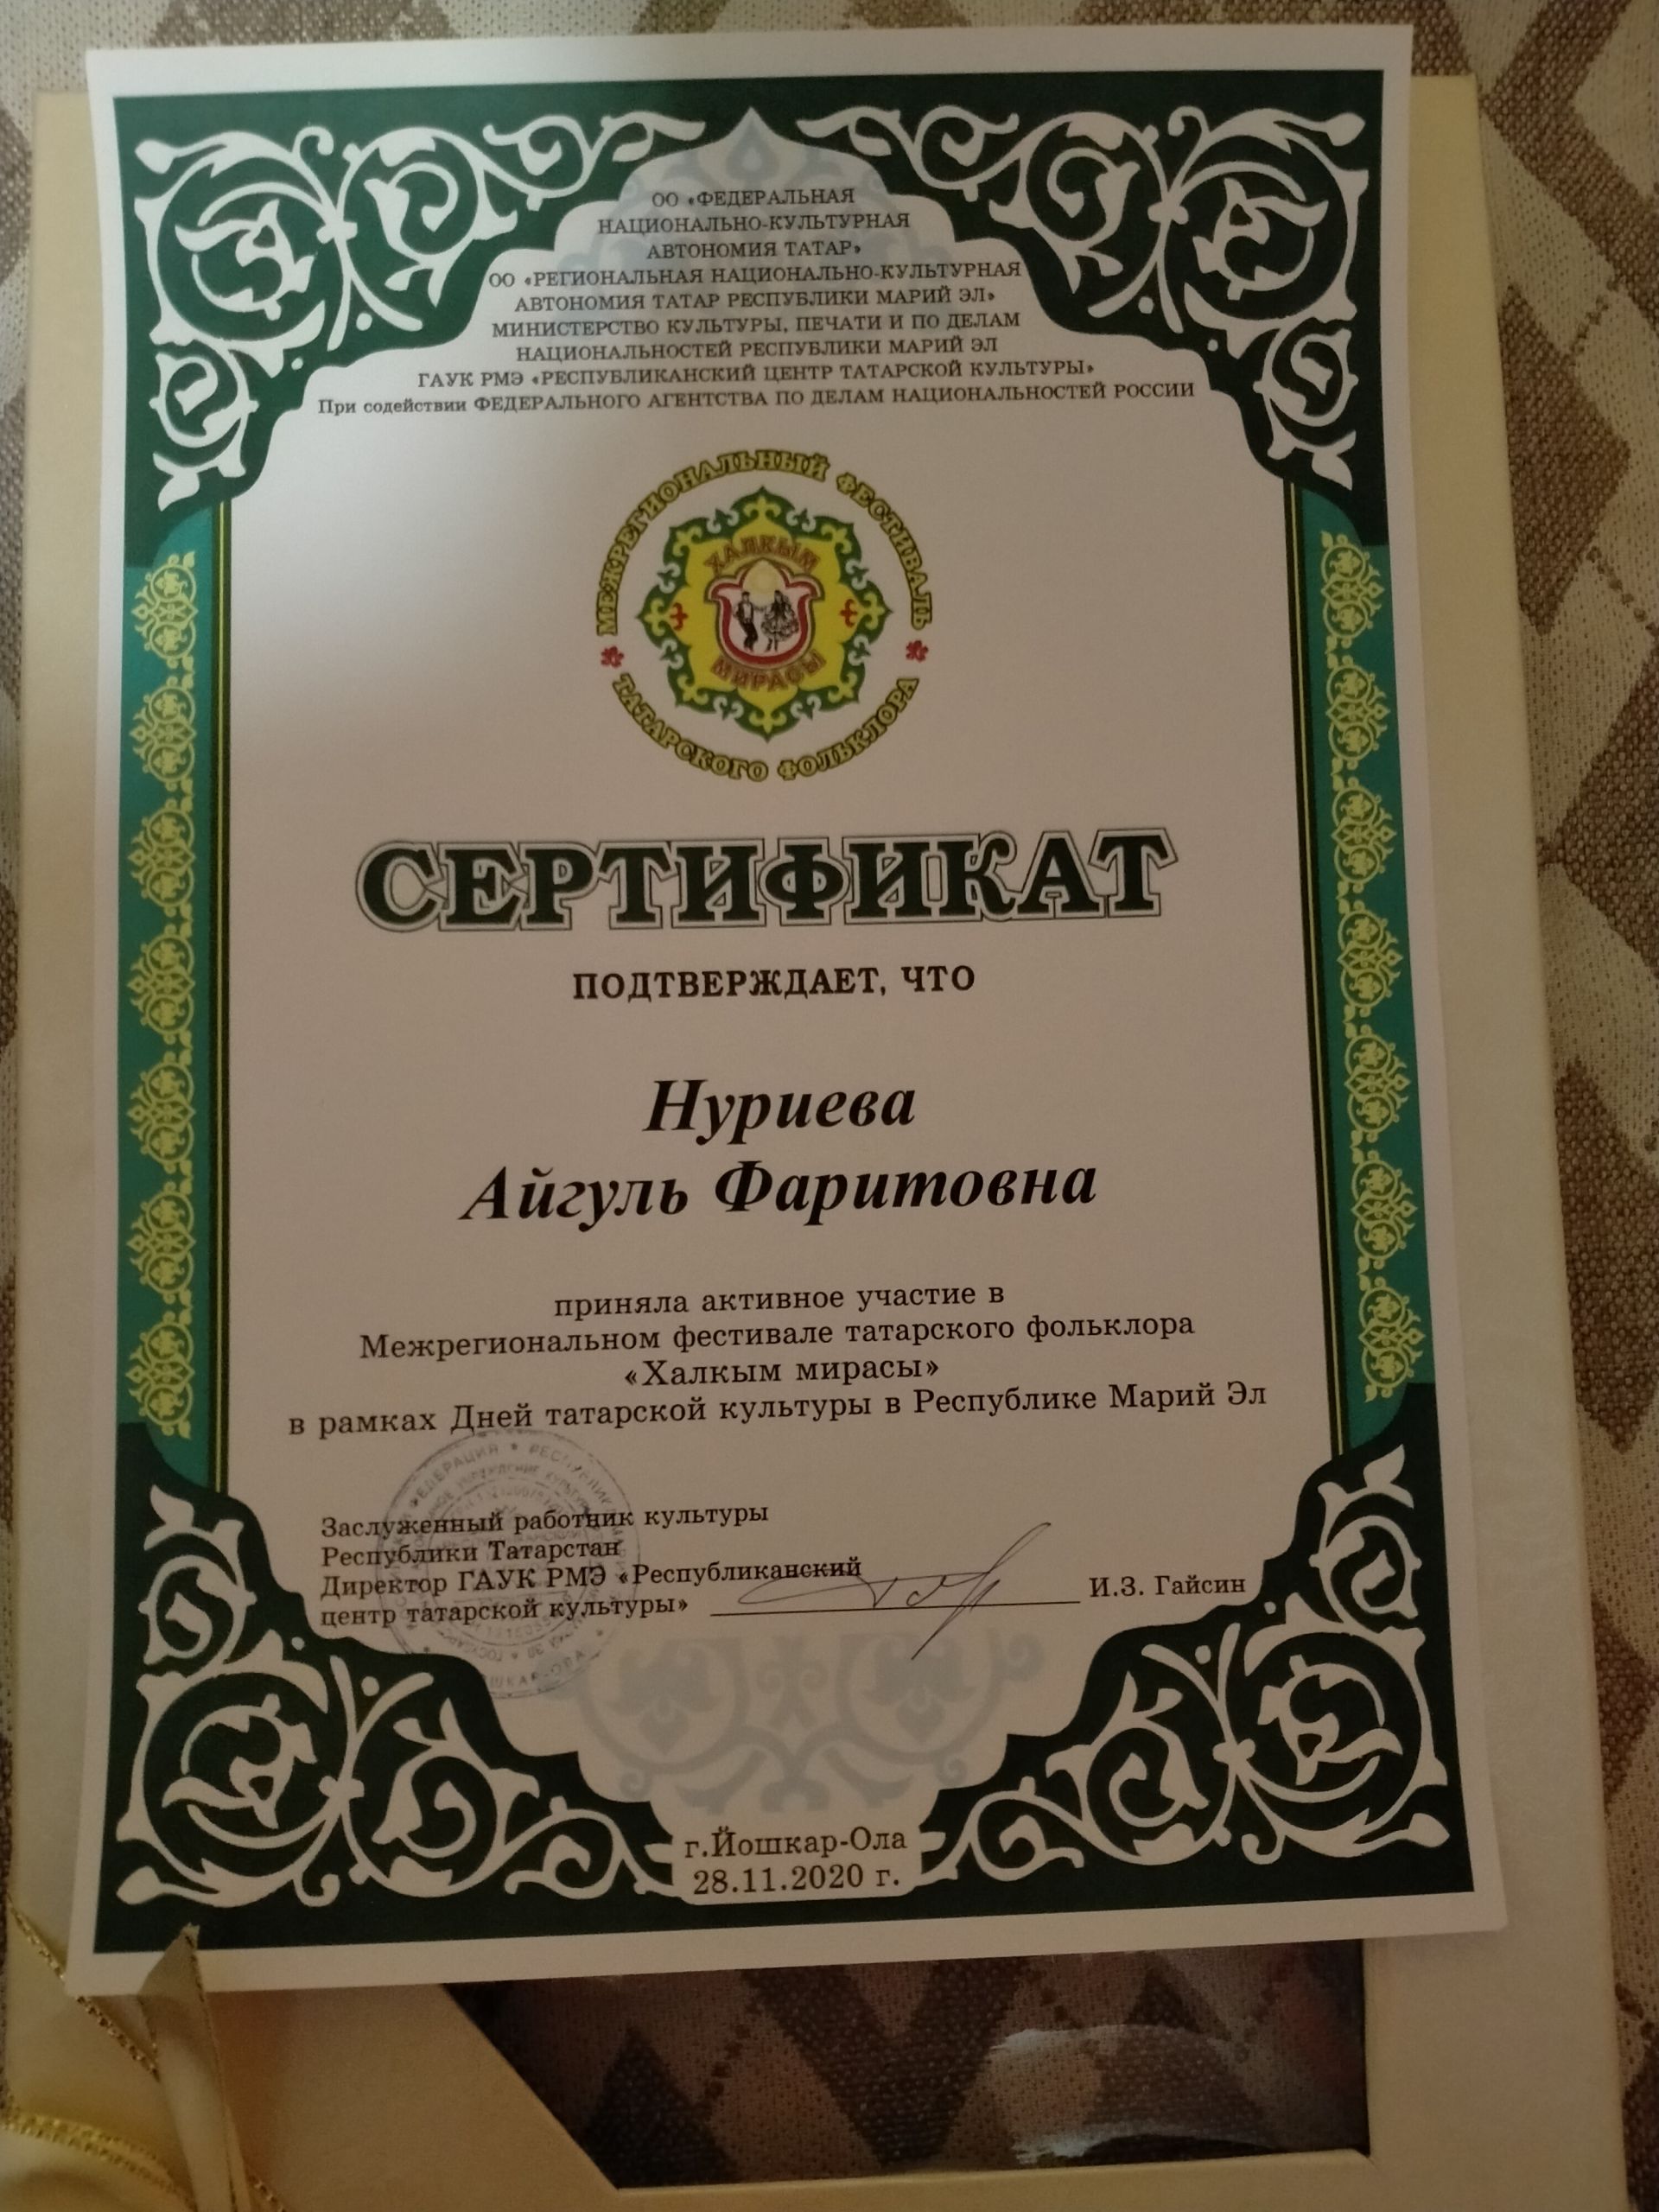 Вокальный коллектив «САФ» стал призером межрегионального фестиваля "Халкым мирасы"